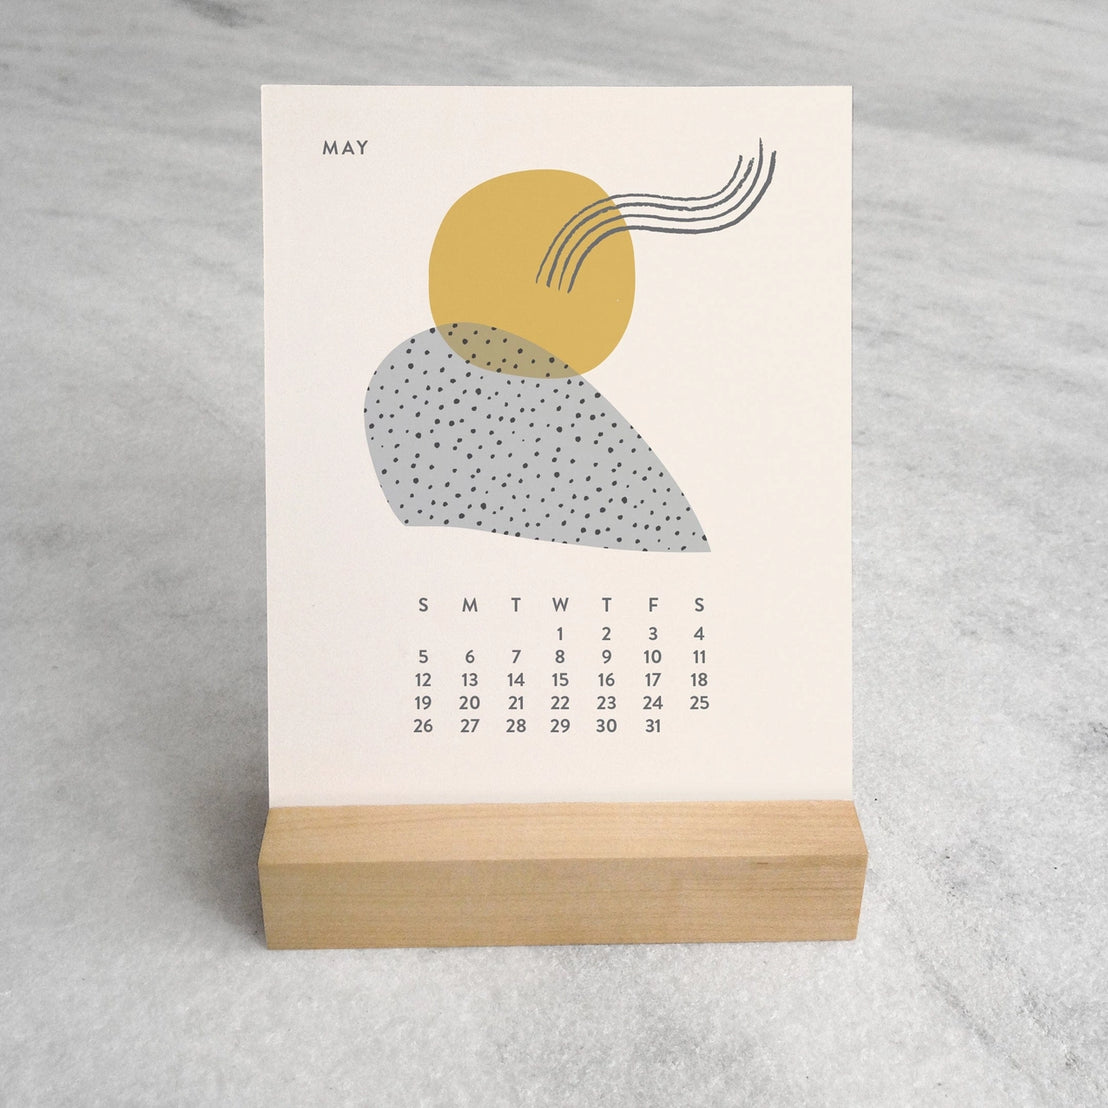 Abstract 2024 Desk Calendar